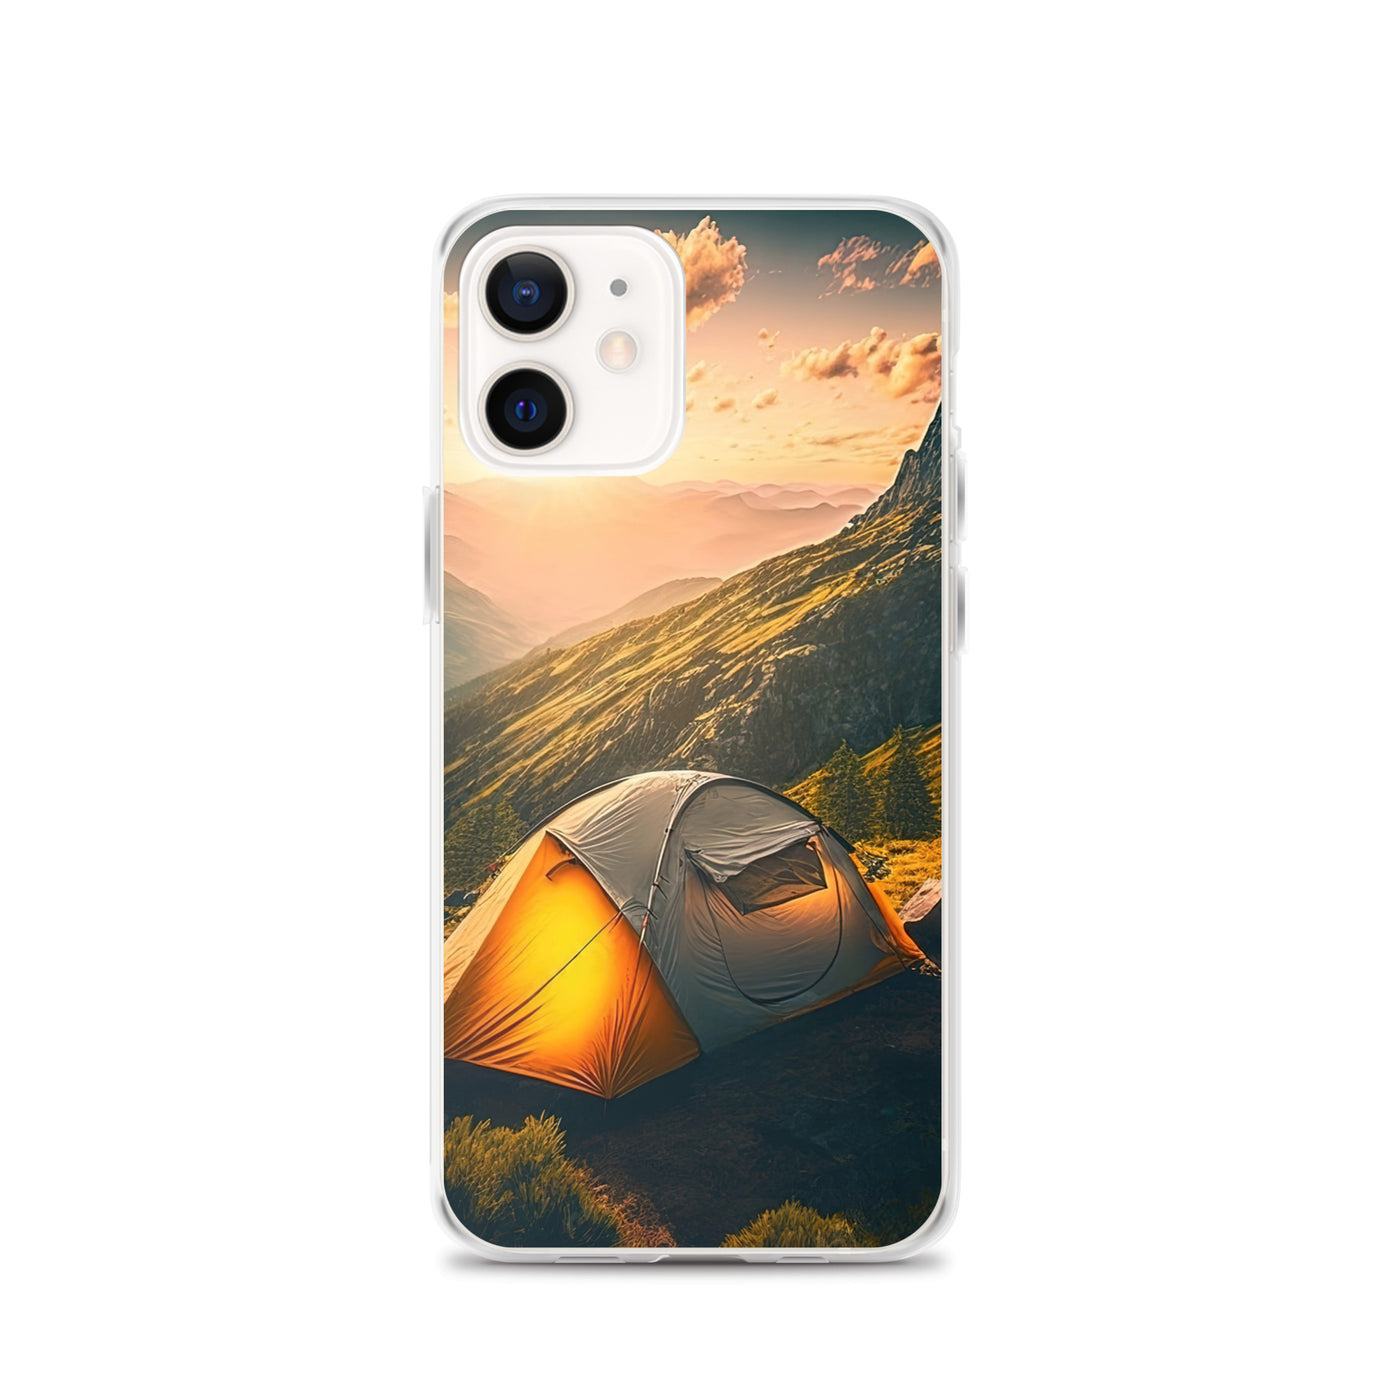 Zelt auf Berg im Sonnenaufgang - Landschafts - iPhone Schutzhülle (durchsichtig) camping xxx iPhone 12